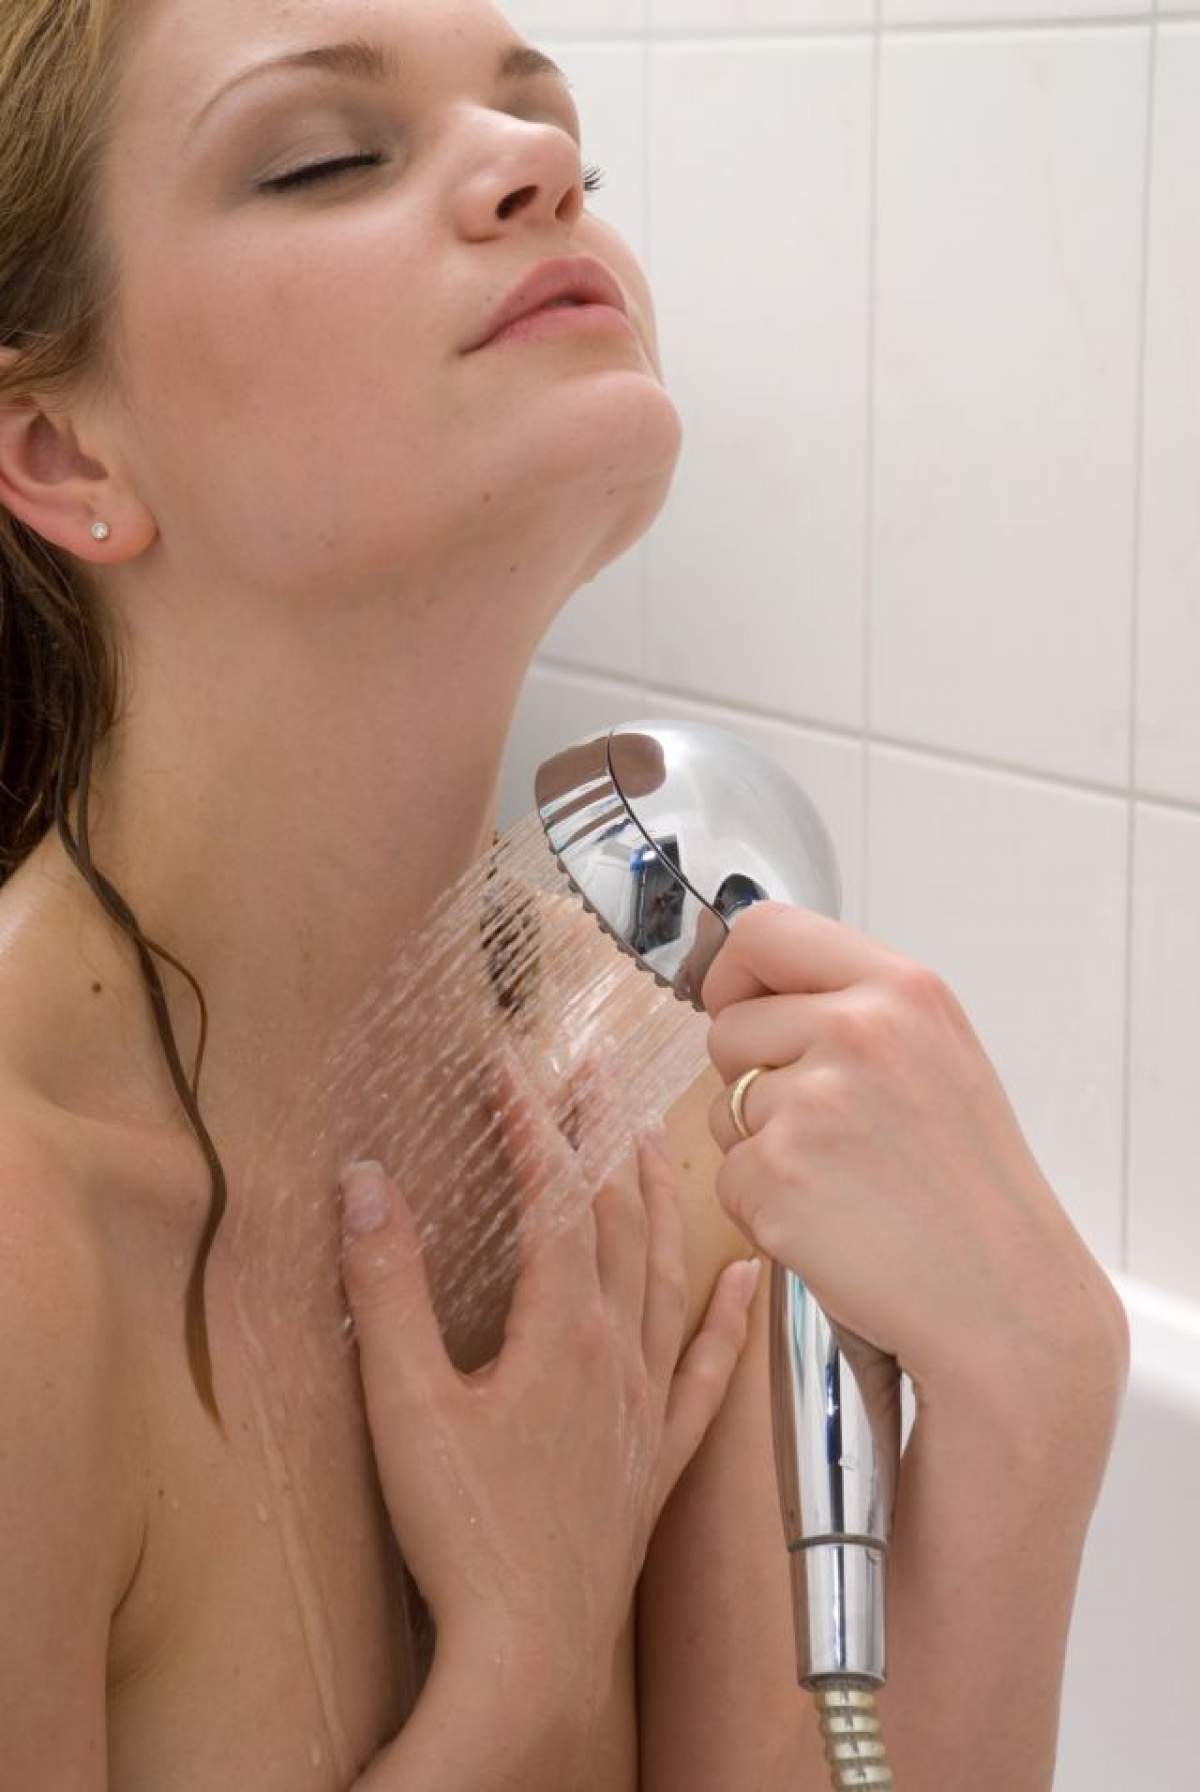 Îţi faci duş cu apă caldă? Şase motive pentru care nu ar trebui să mai faci asta